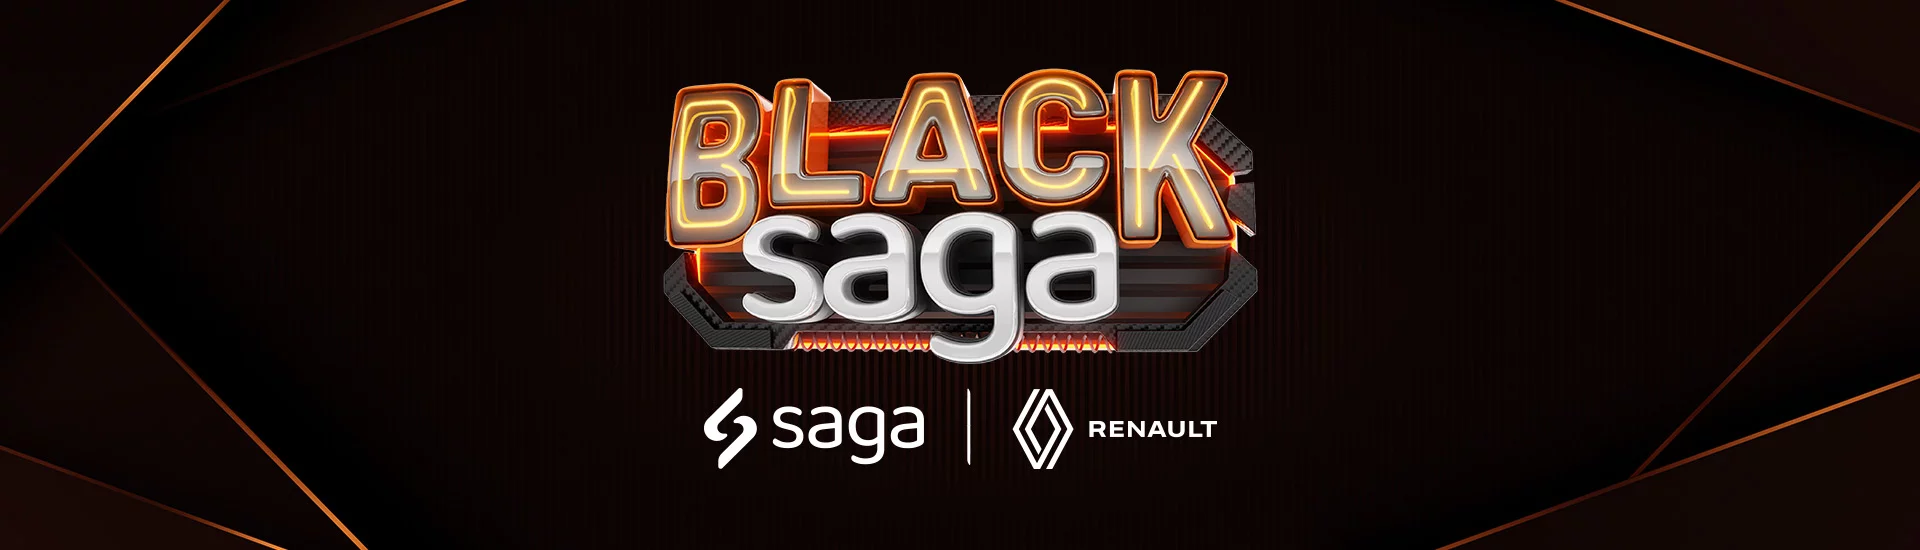 Black Friday Saga Renault Brasilia!